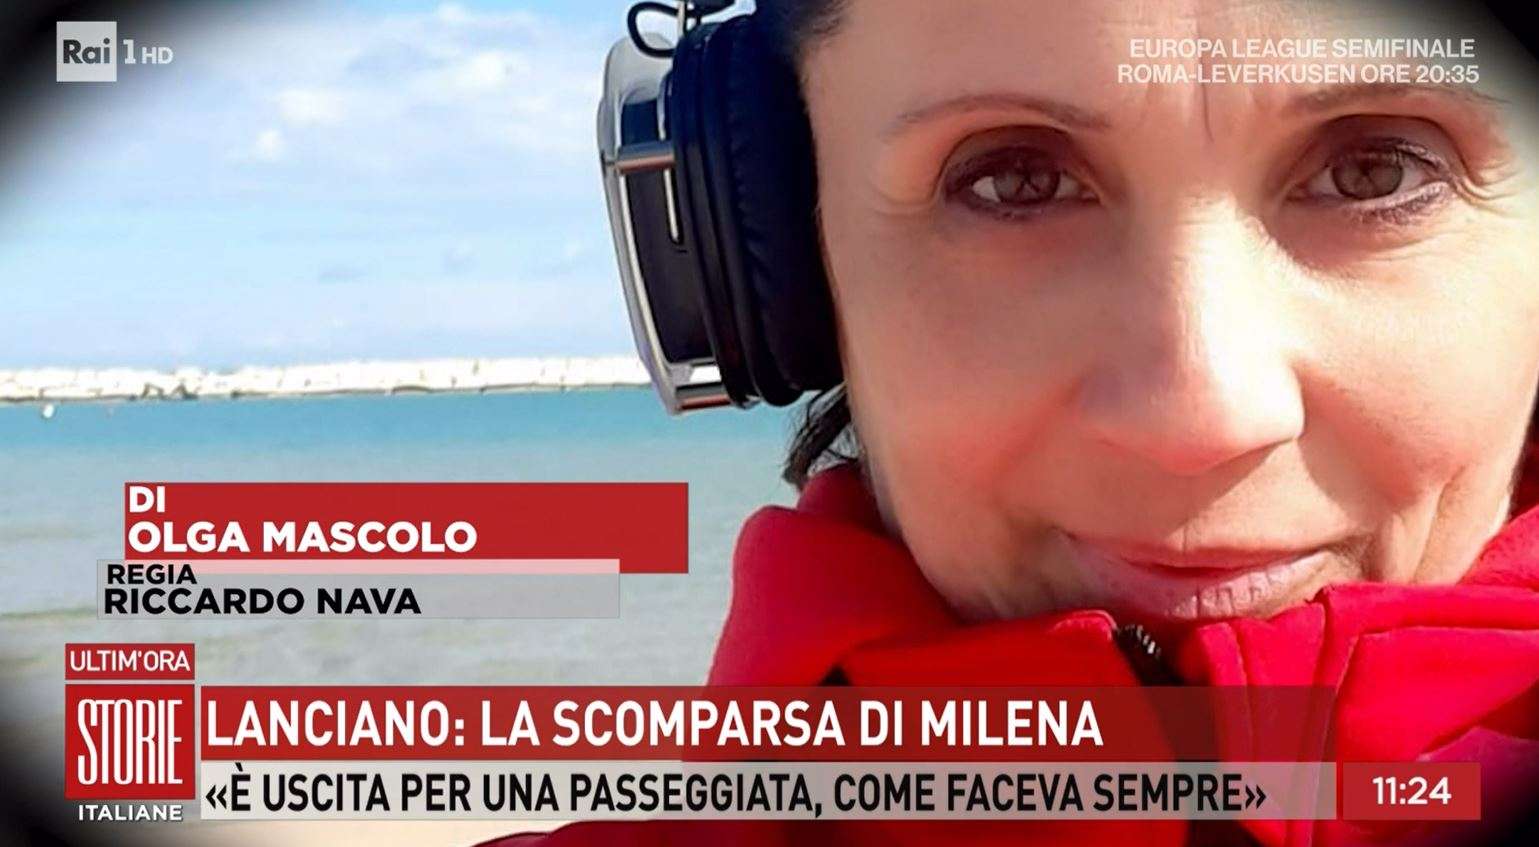 La scomparsa di MIlena da Lanciano (Storie Italiane)